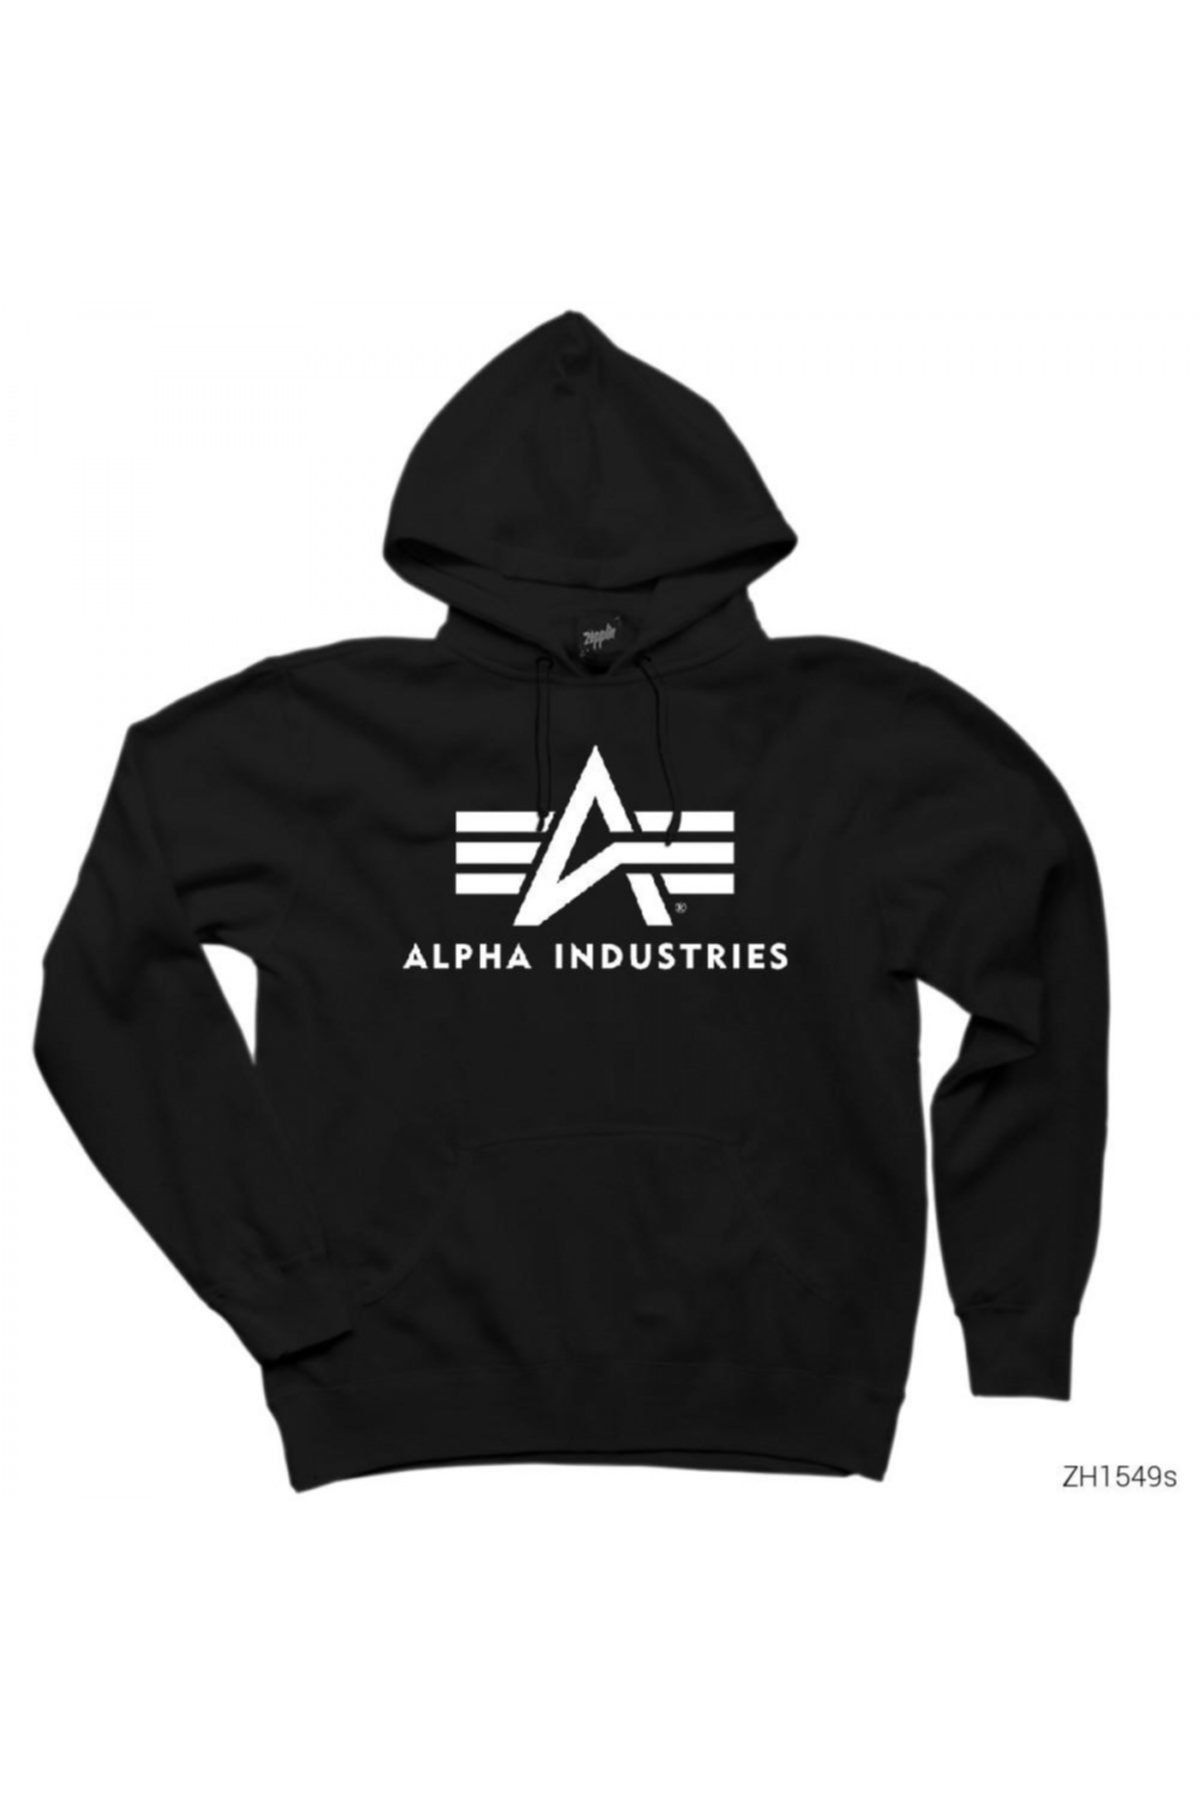 Z zepplin Alpha Industries Black Hooded Sweatshirt / Hoodie - Trendyol